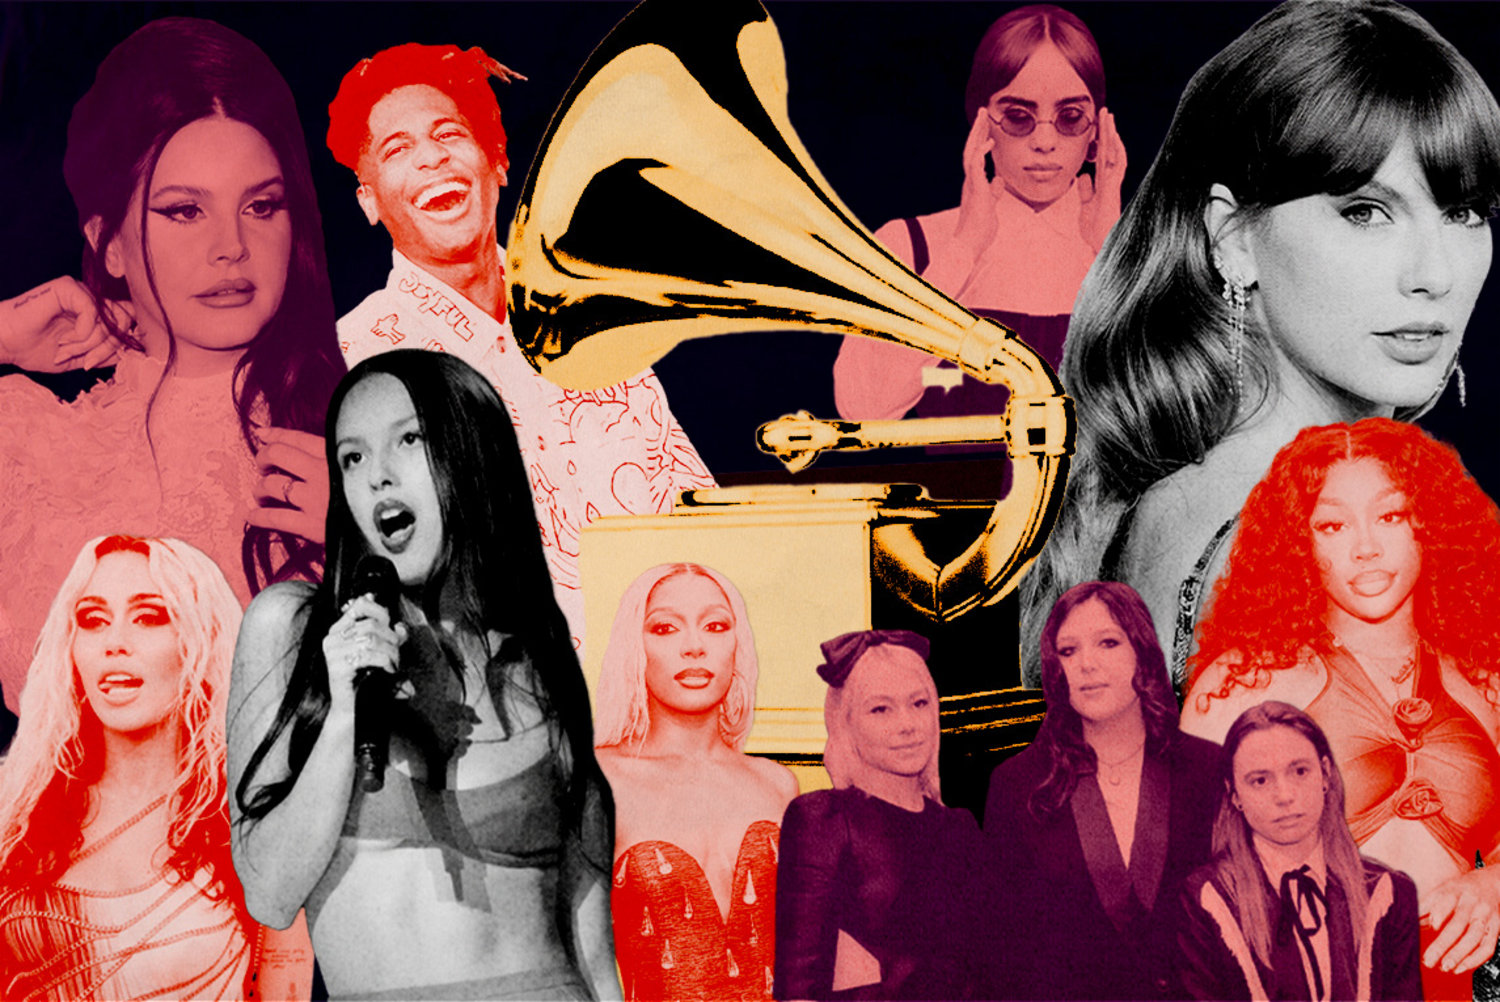 Lizzo Presents Grammy Award to Longtime Friend SZA, Who Was